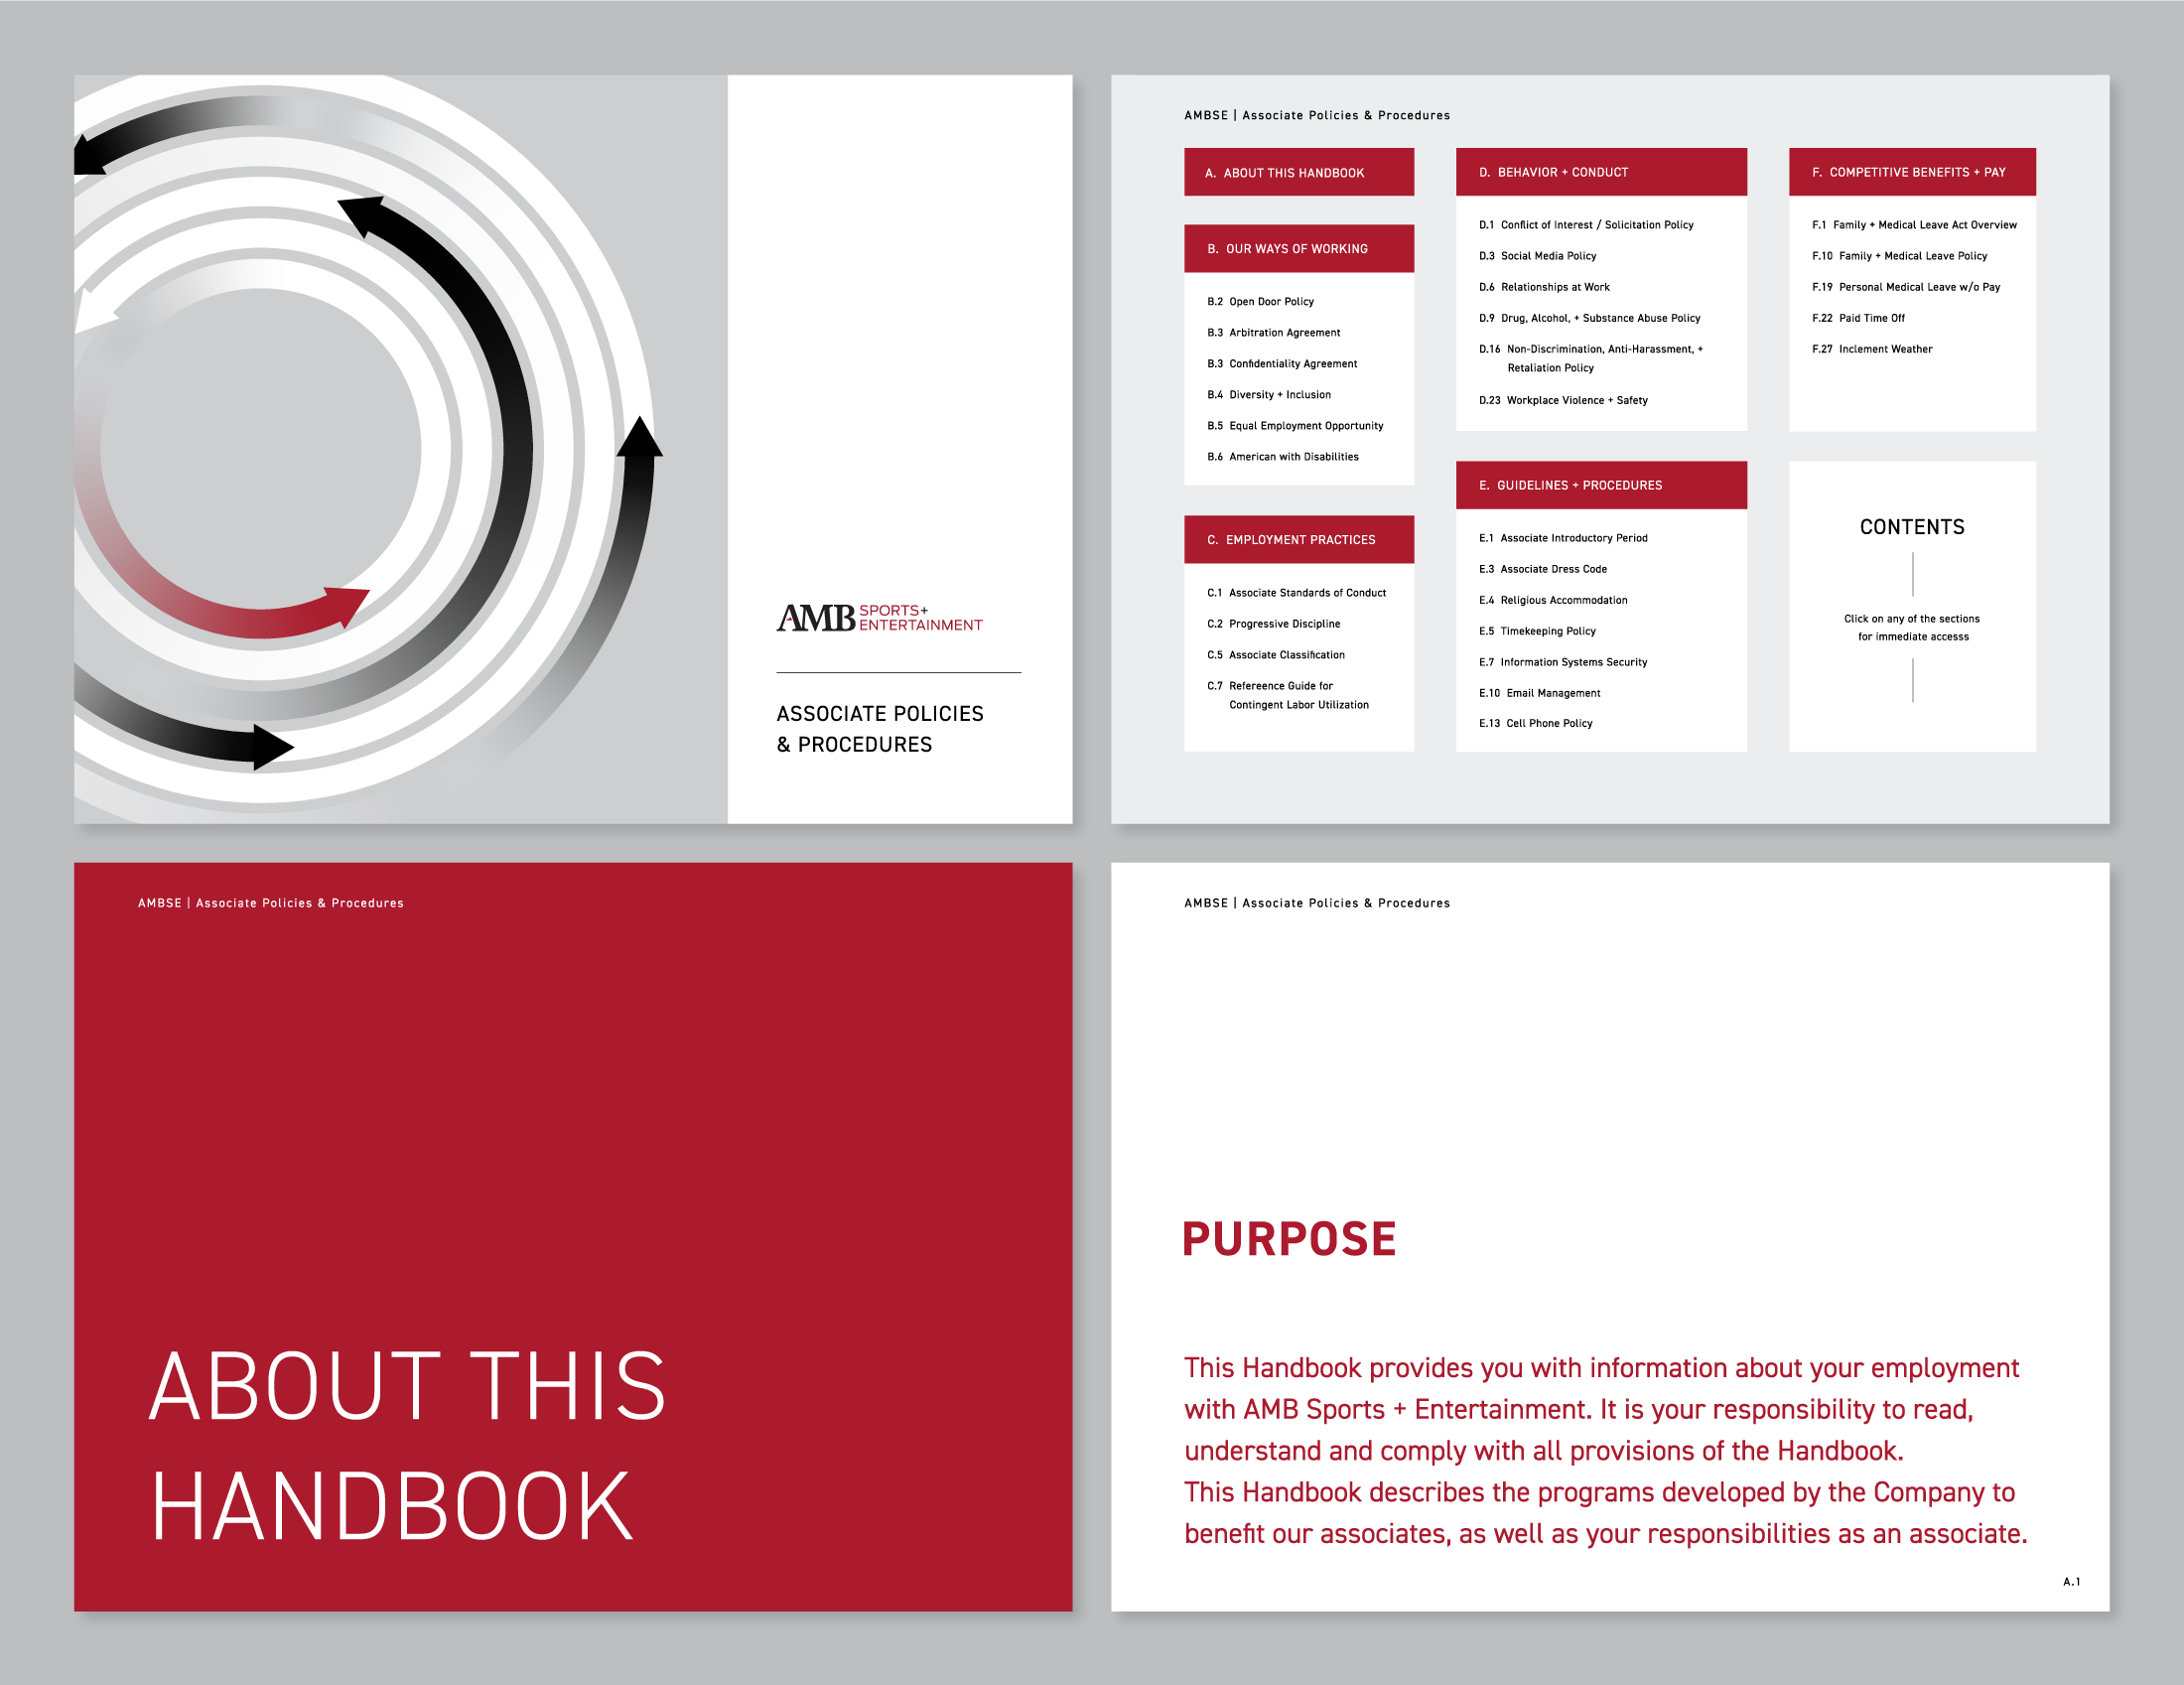 AMBSE_HR-Handbook-1